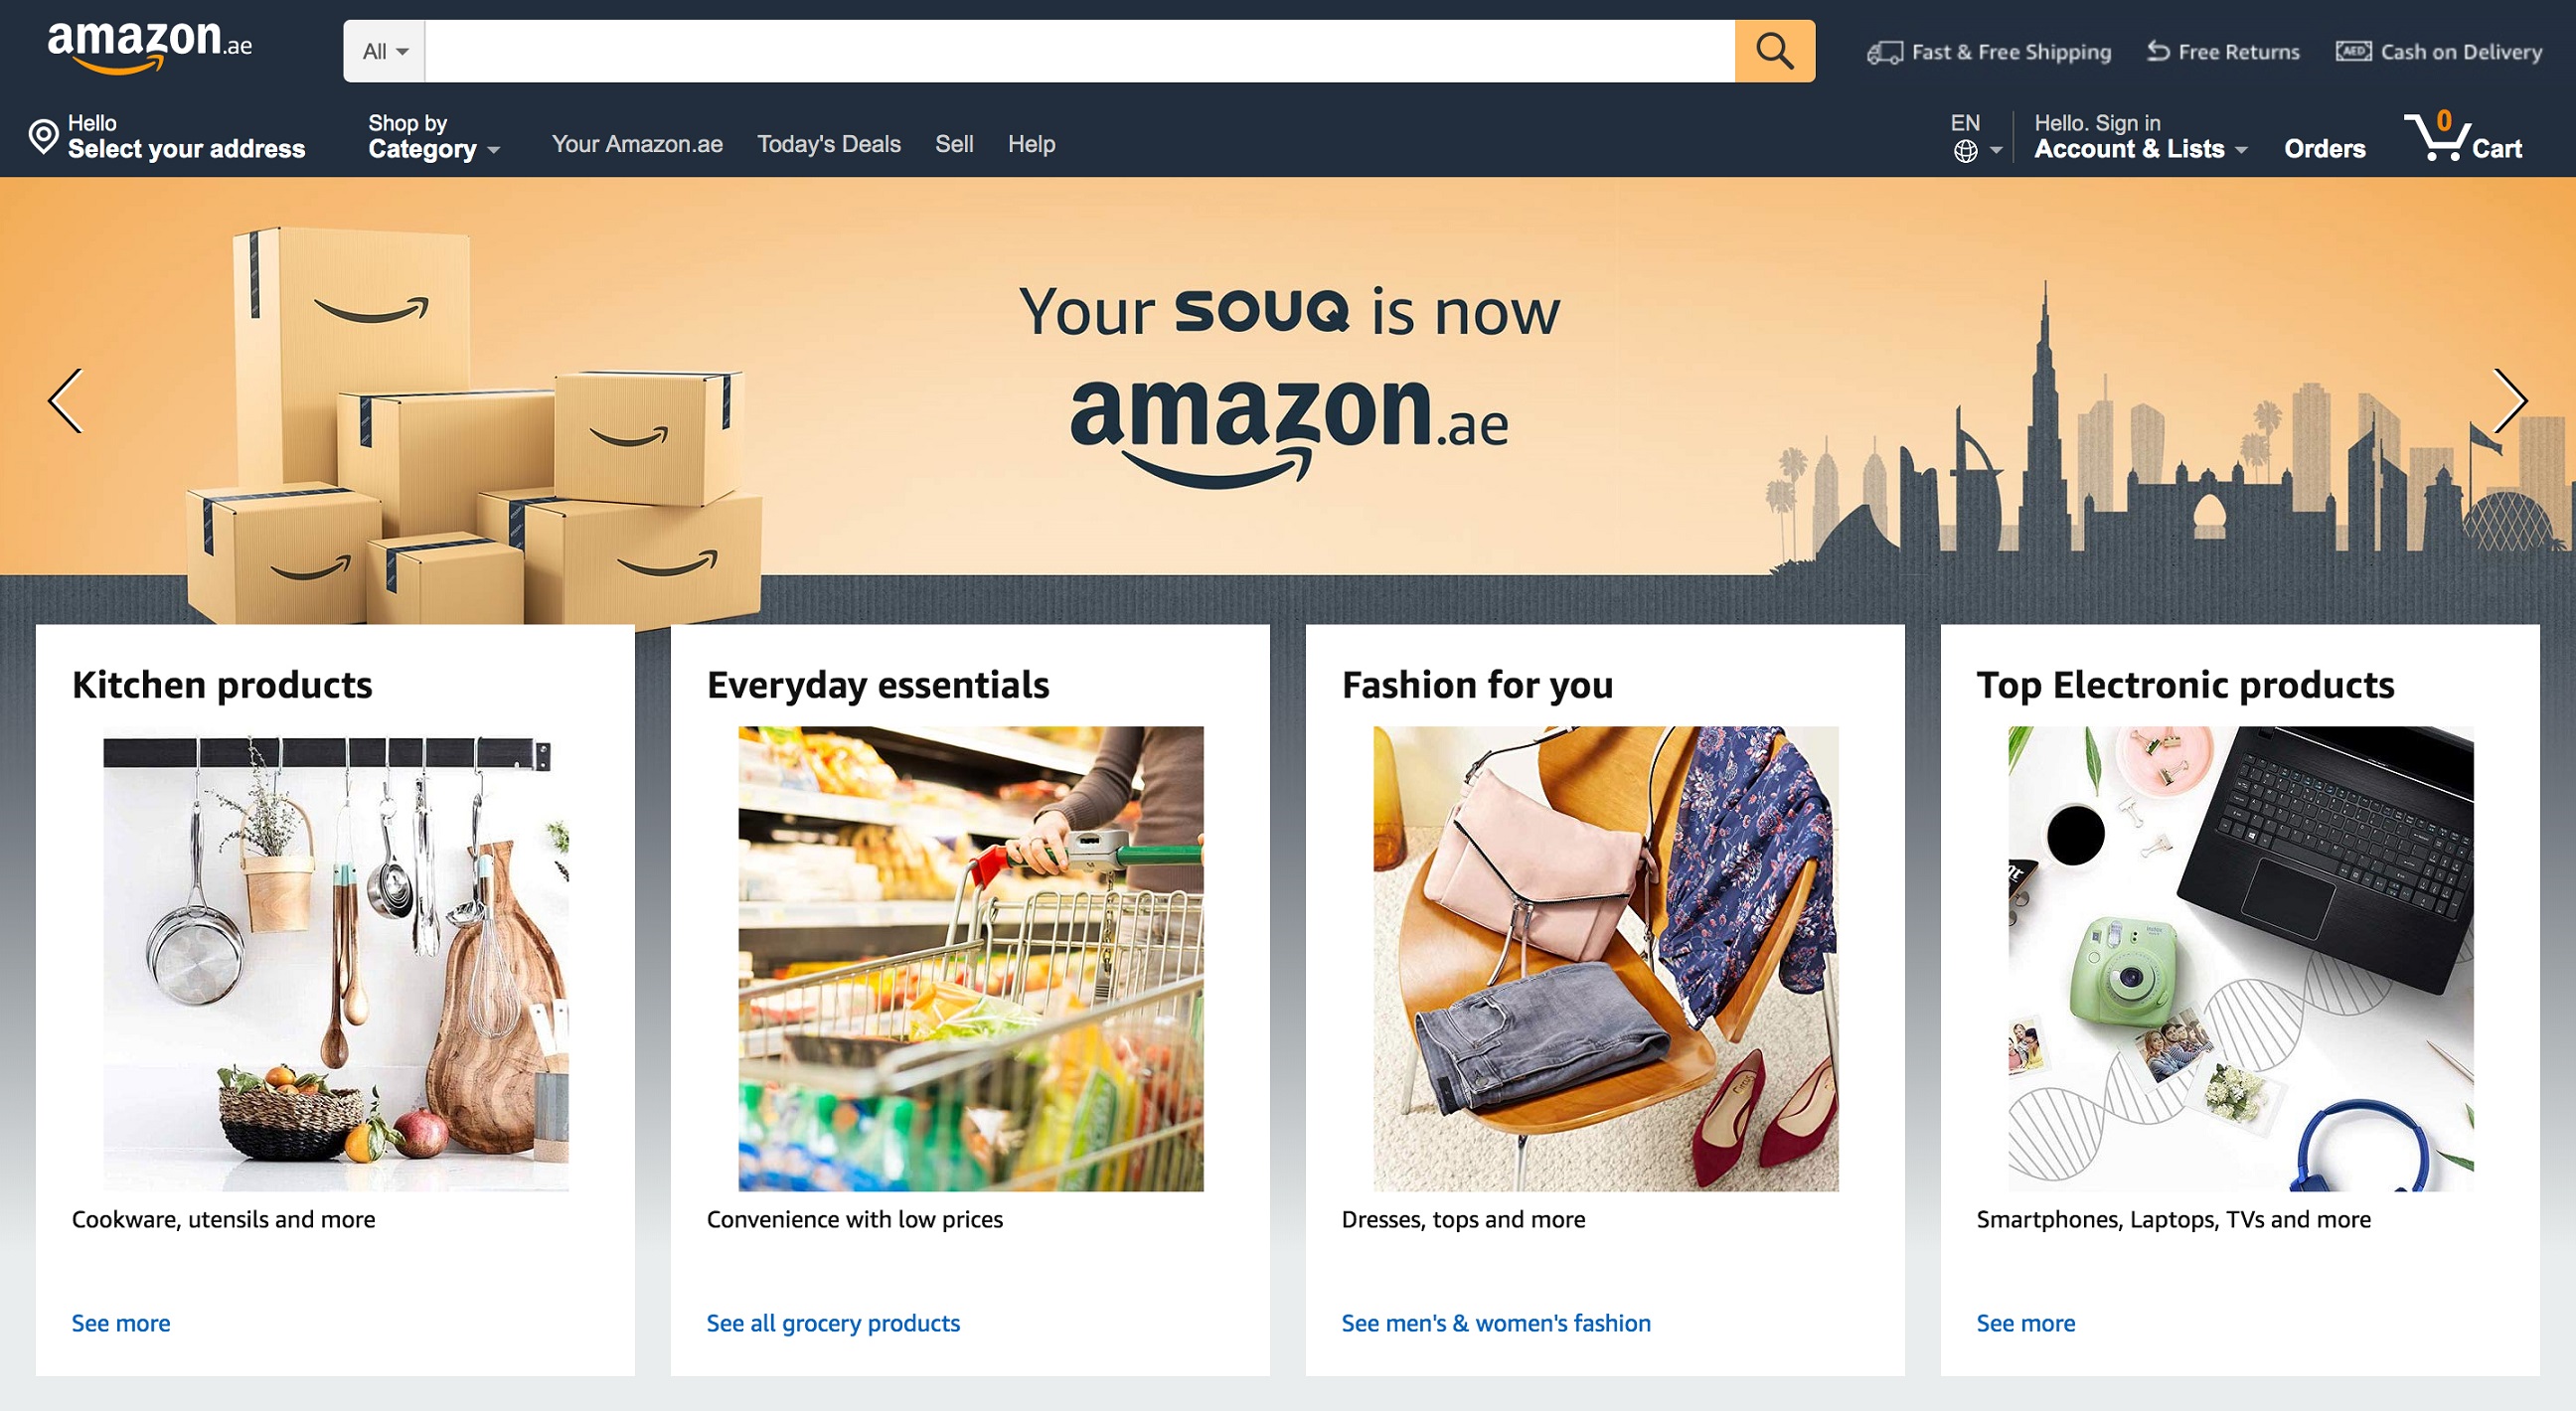 Souq Is Now Amazon.ae